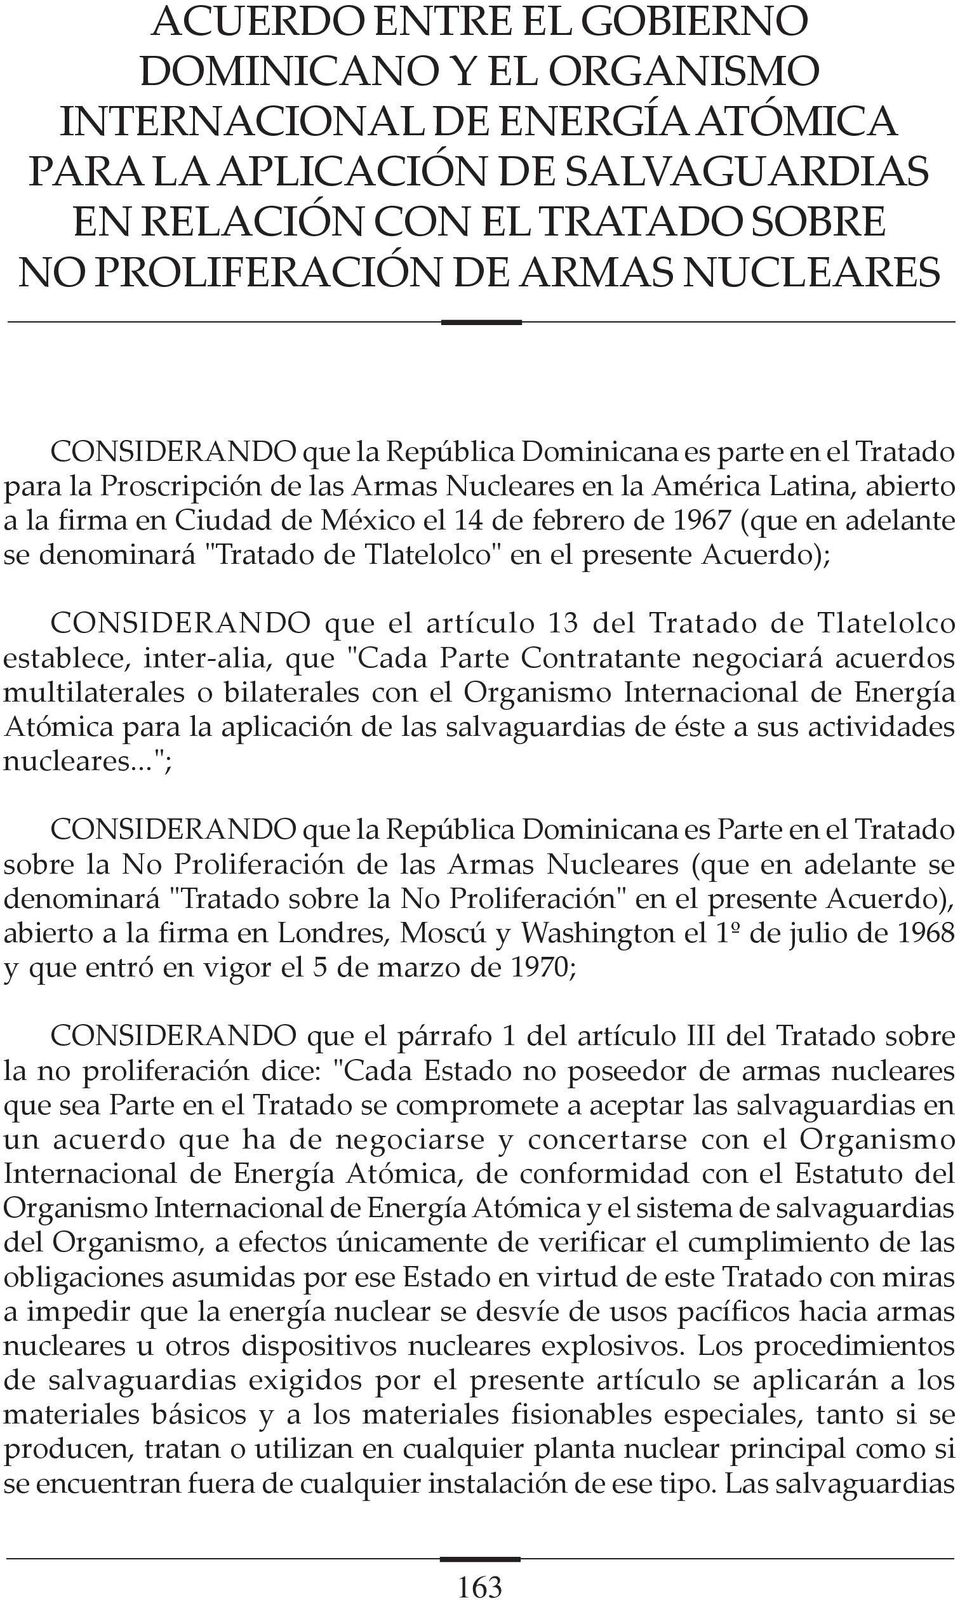 en adelante se denominará "Tratado de Tlatelolco" en el presente Acuerdo); CONSIDERANDO que el artículo 13 del Tratado de Tlatelolco establece, inter-alia, que "Cada Parte Contratante negociará